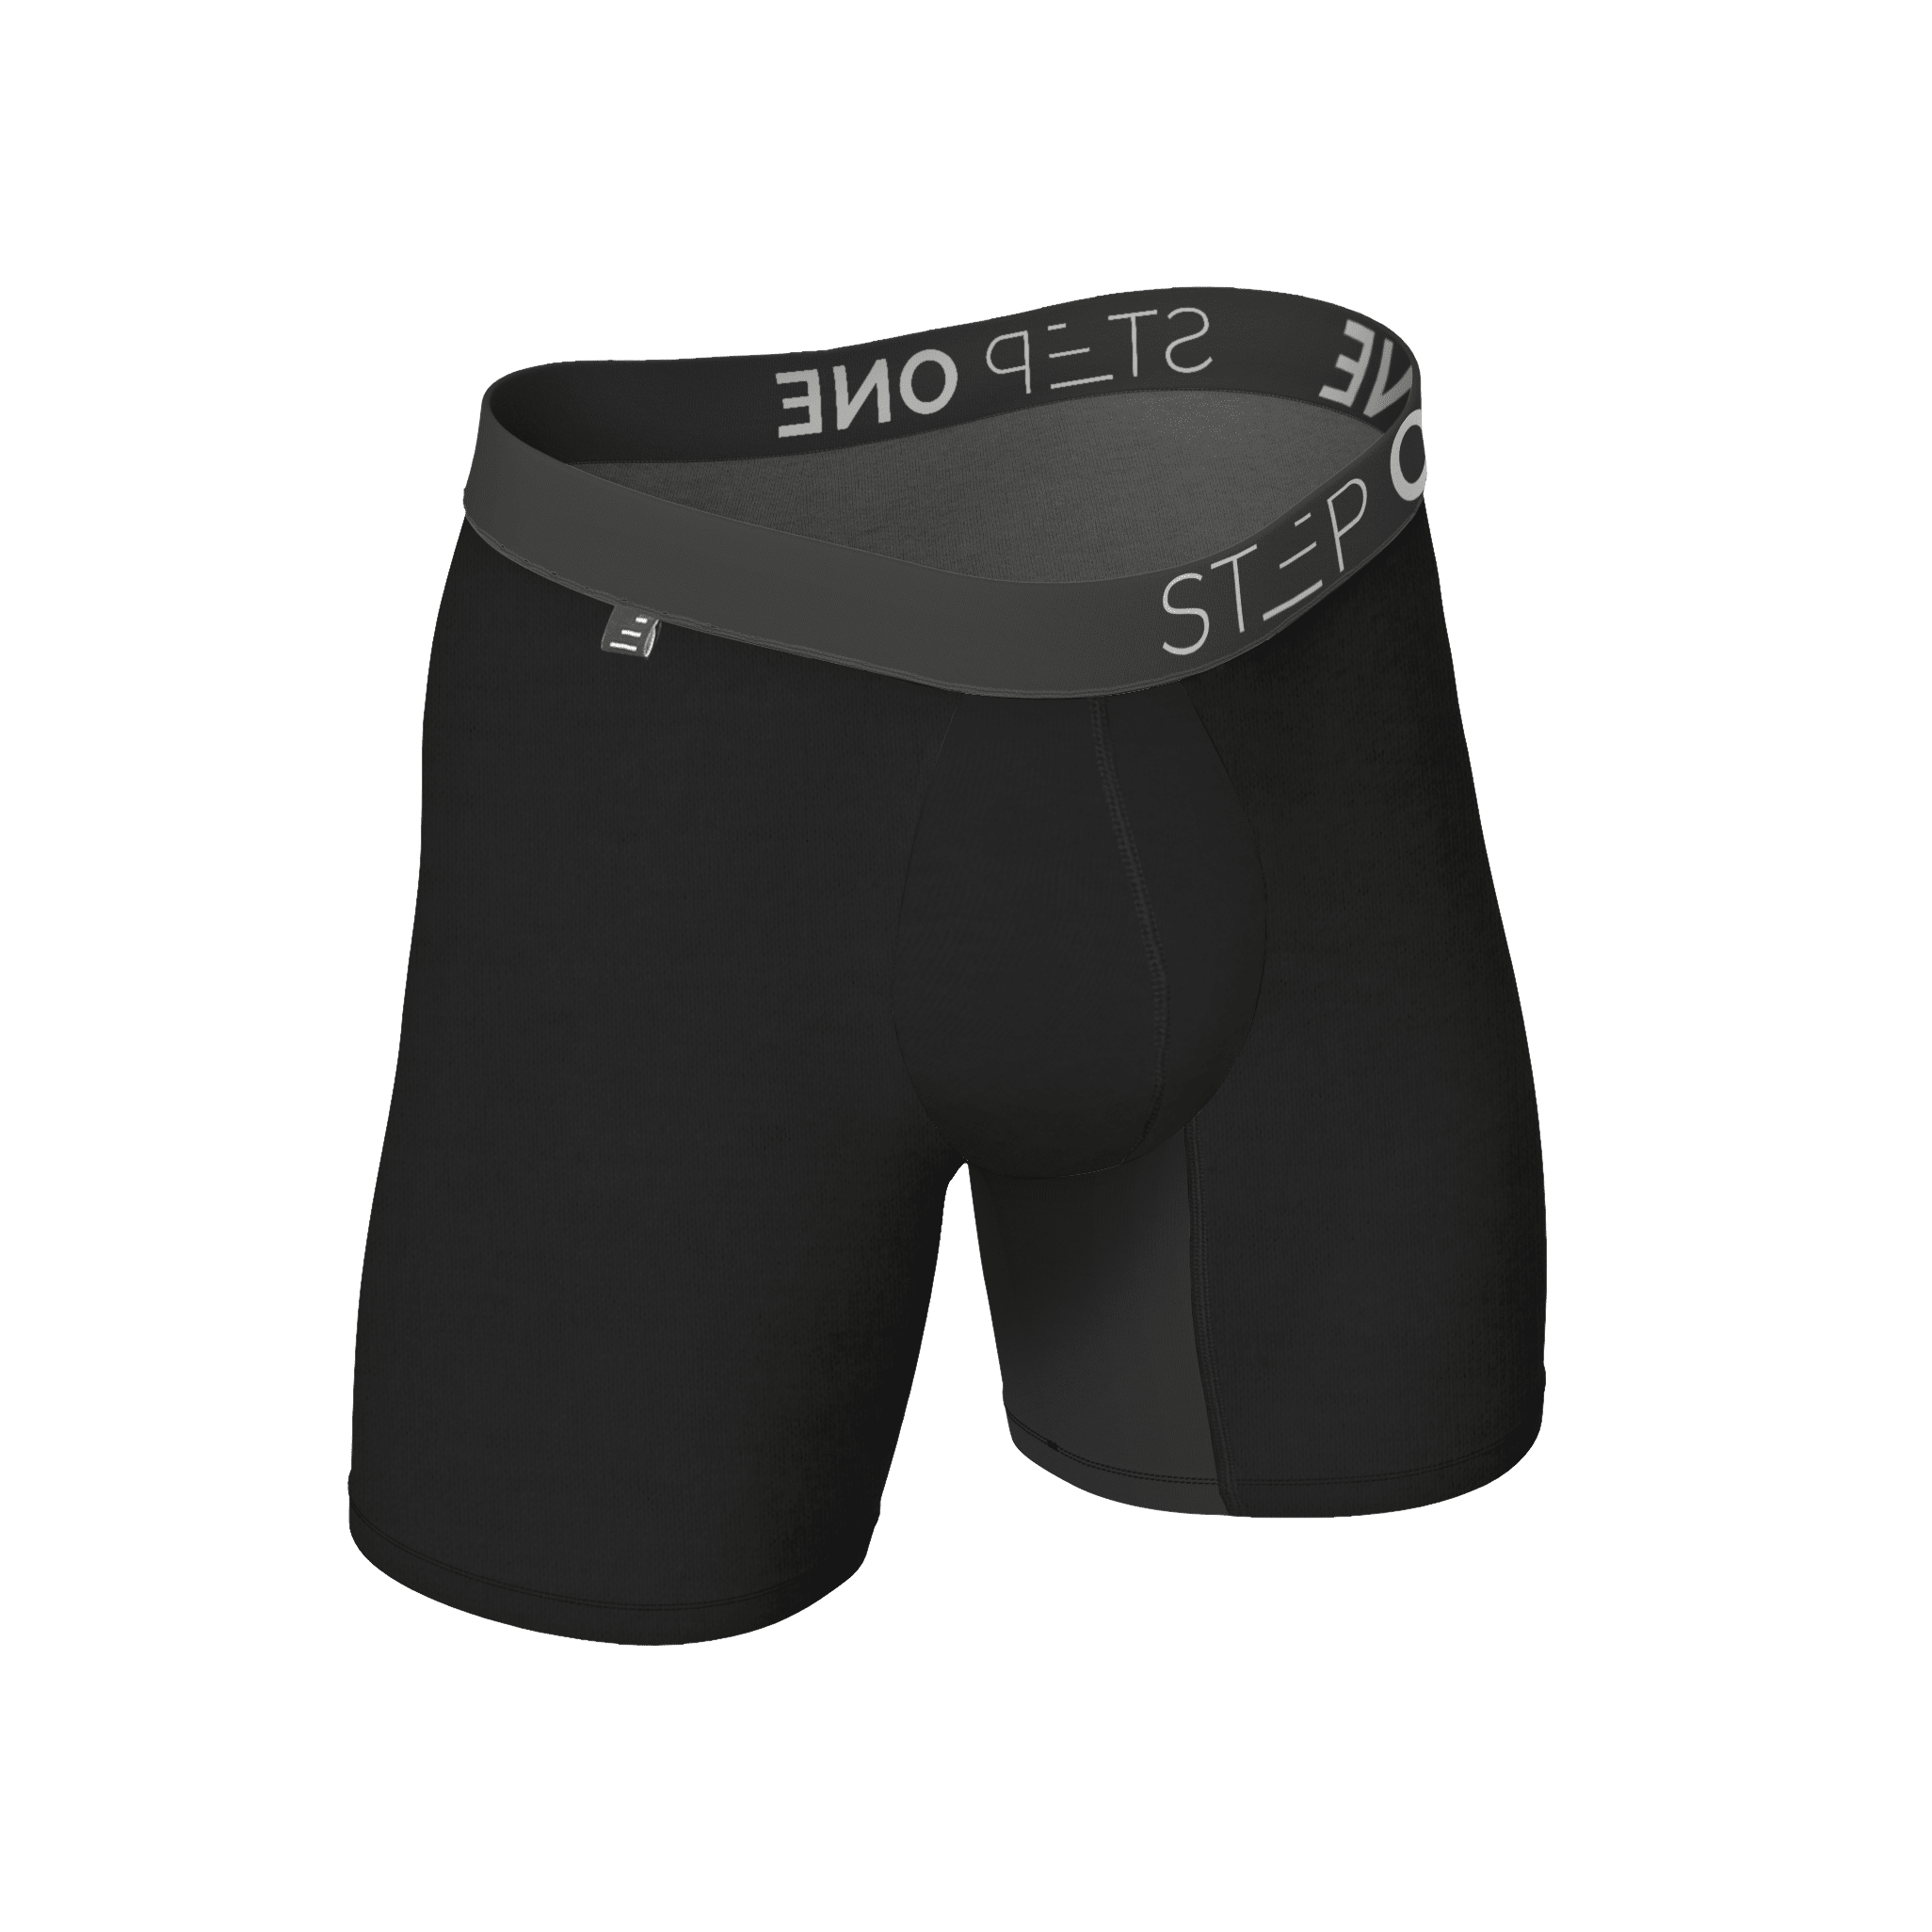 Men's Trunk Underwear - Buy Men's Trunk Underwear Online